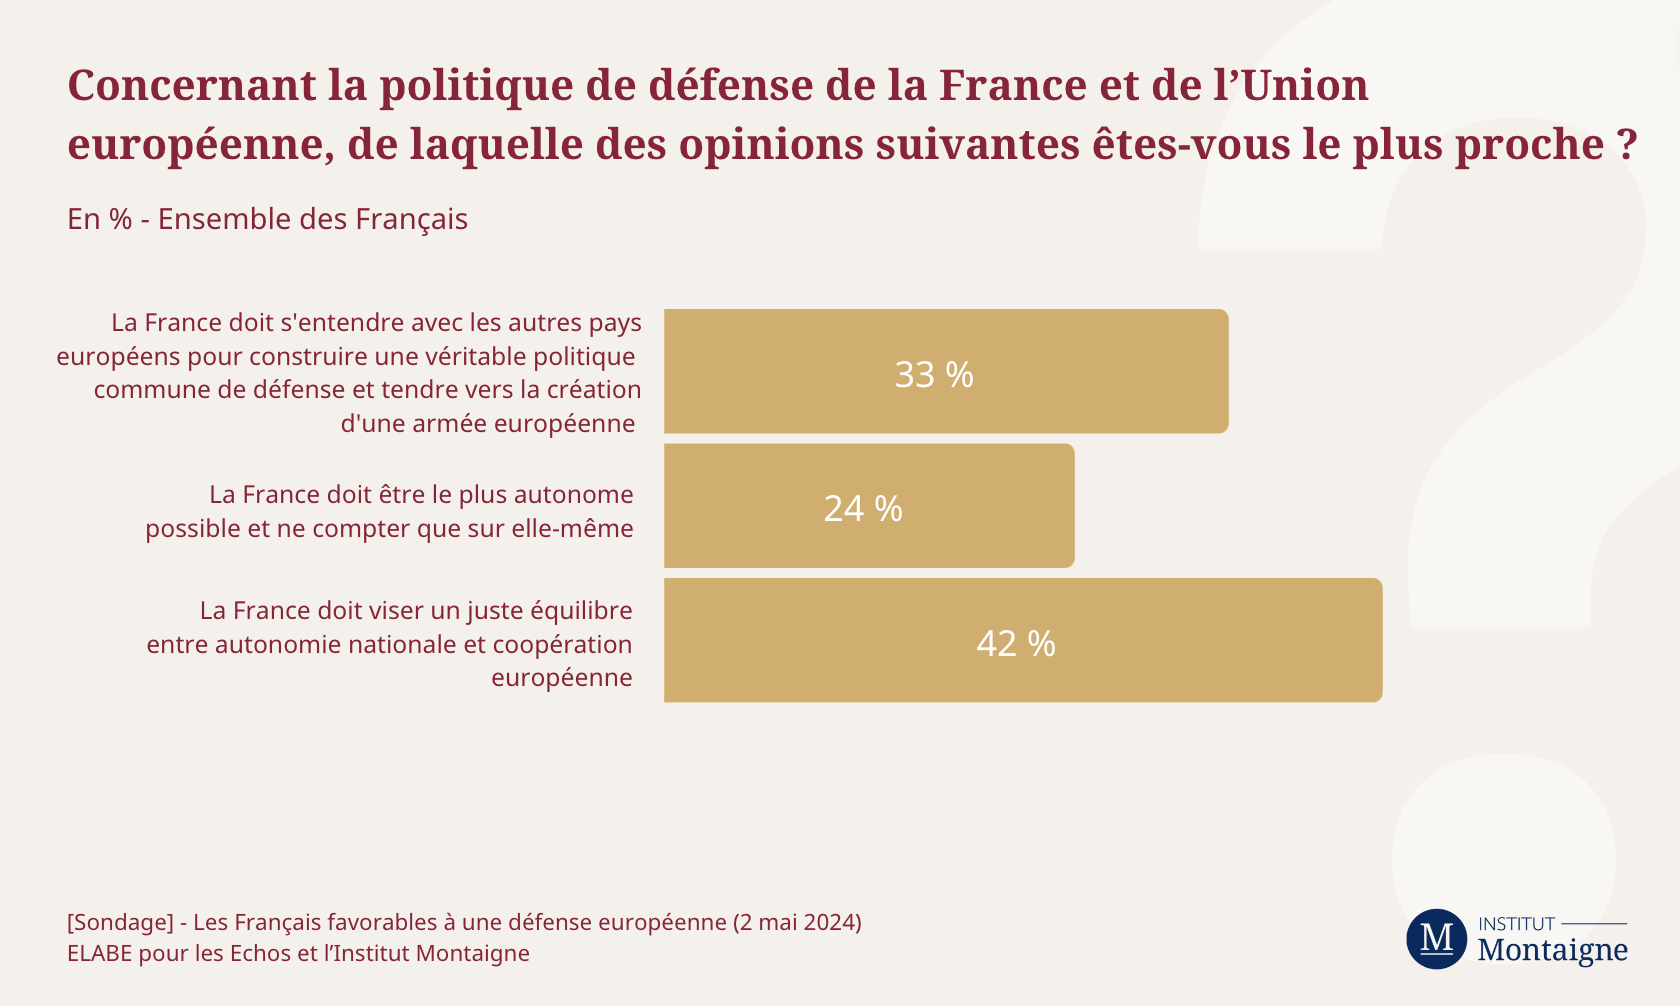 sondage-les-francais-favorables-une-defense-europeenne-3